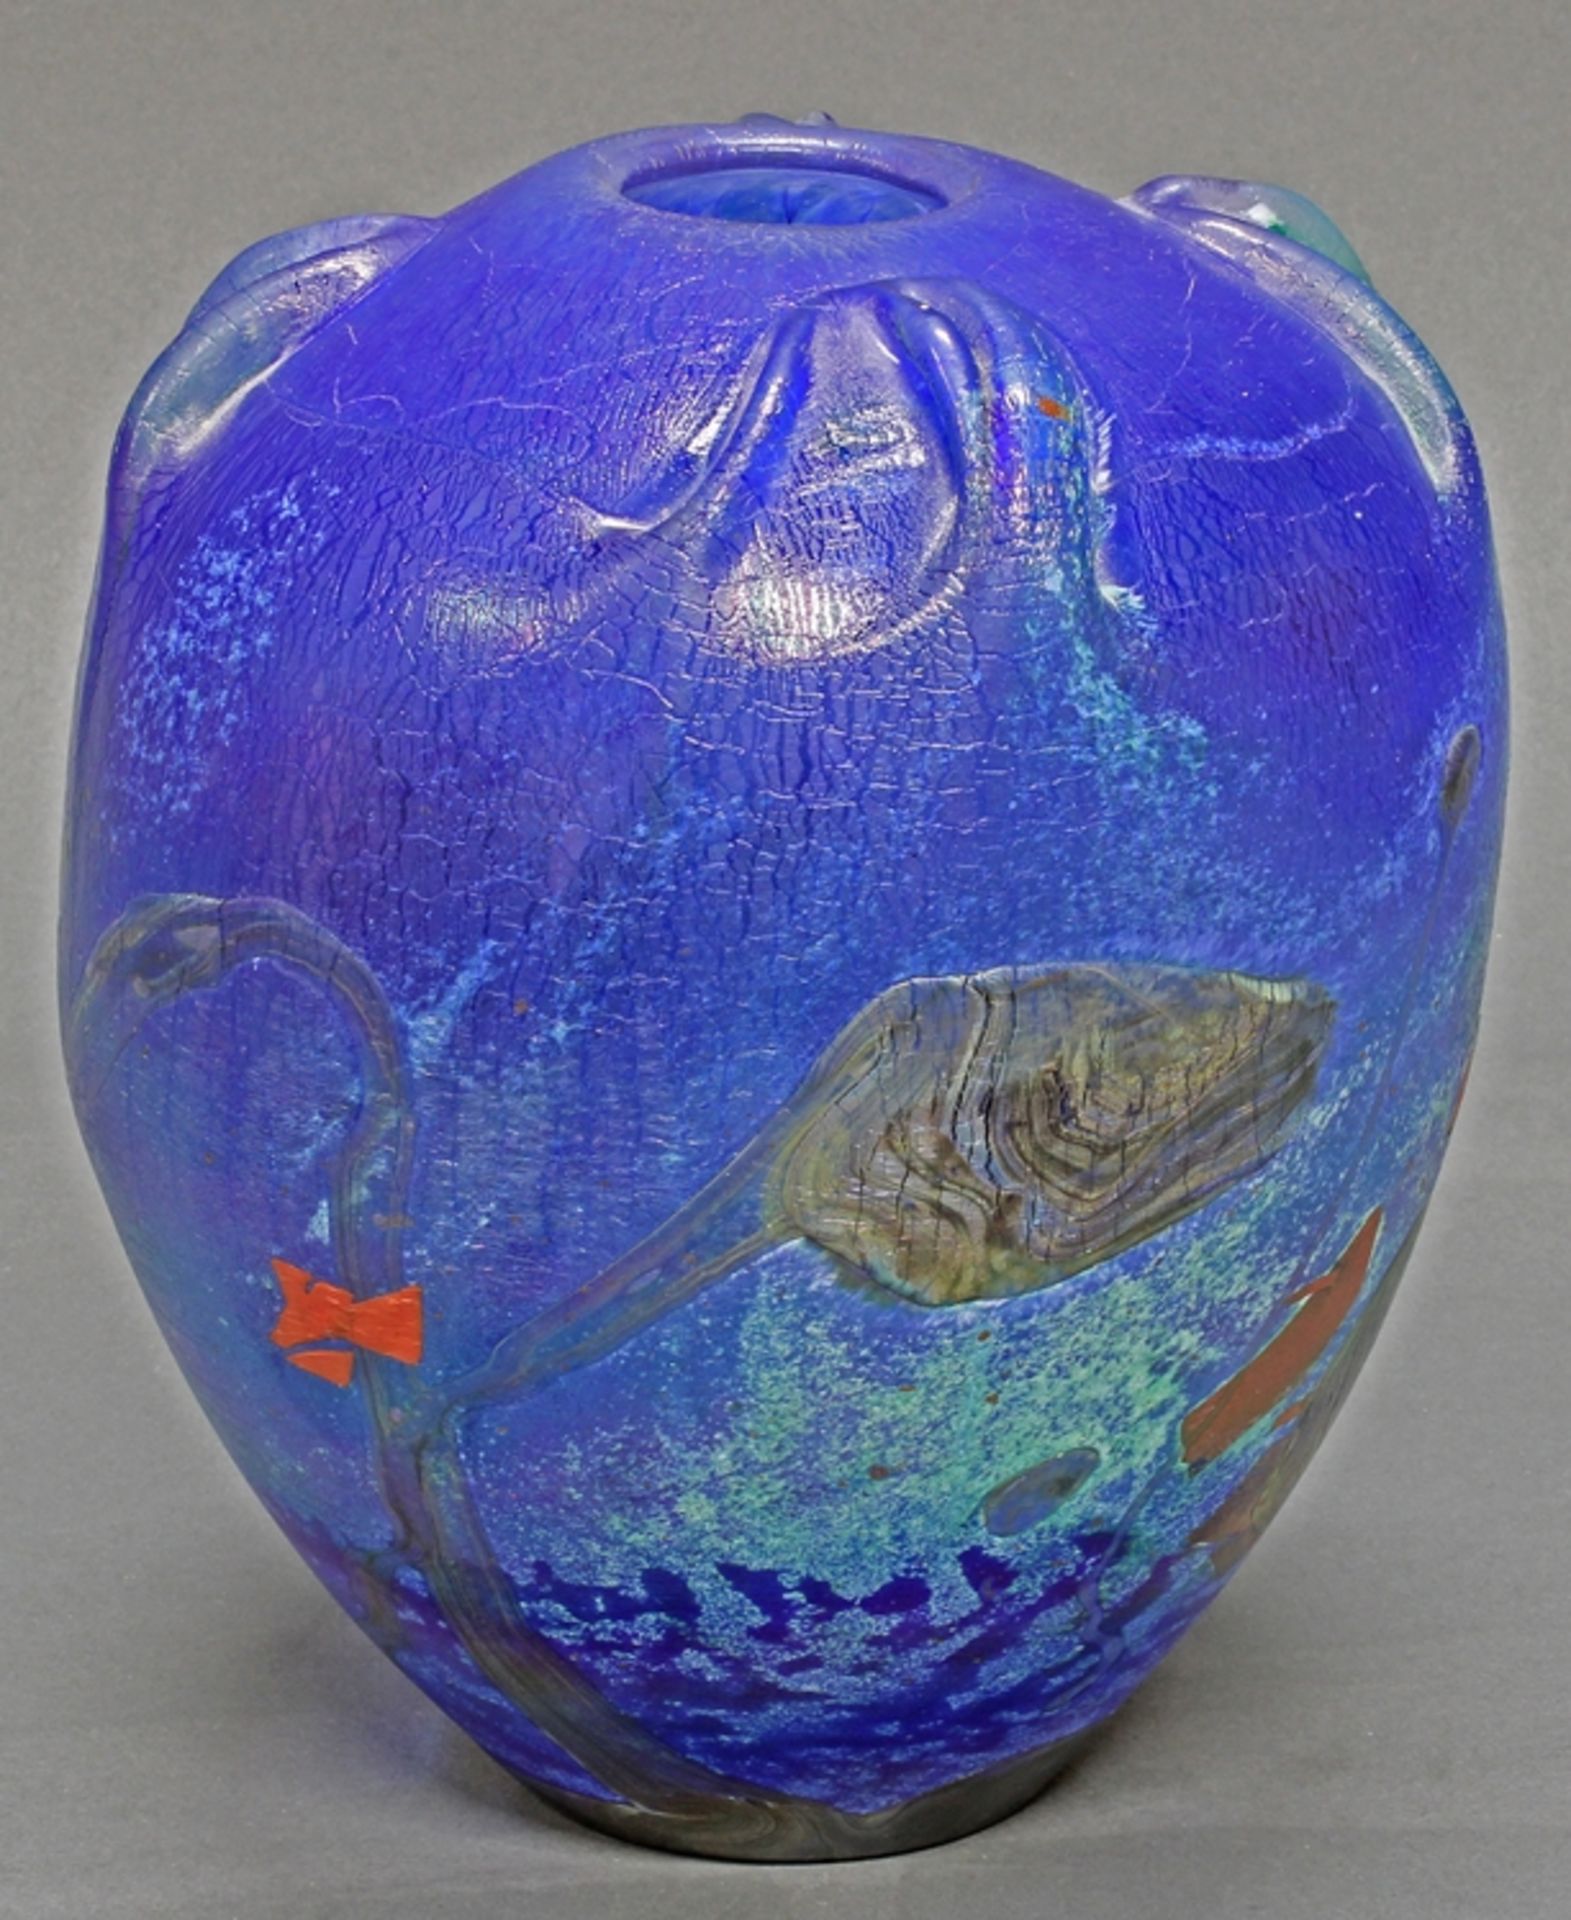 Vase, Glas, Jean-Claude Novaro, 1986, vegetabiler, farbiger Dekor auf blauem Grund, lüstrierend, si - Bild 2 aus 3